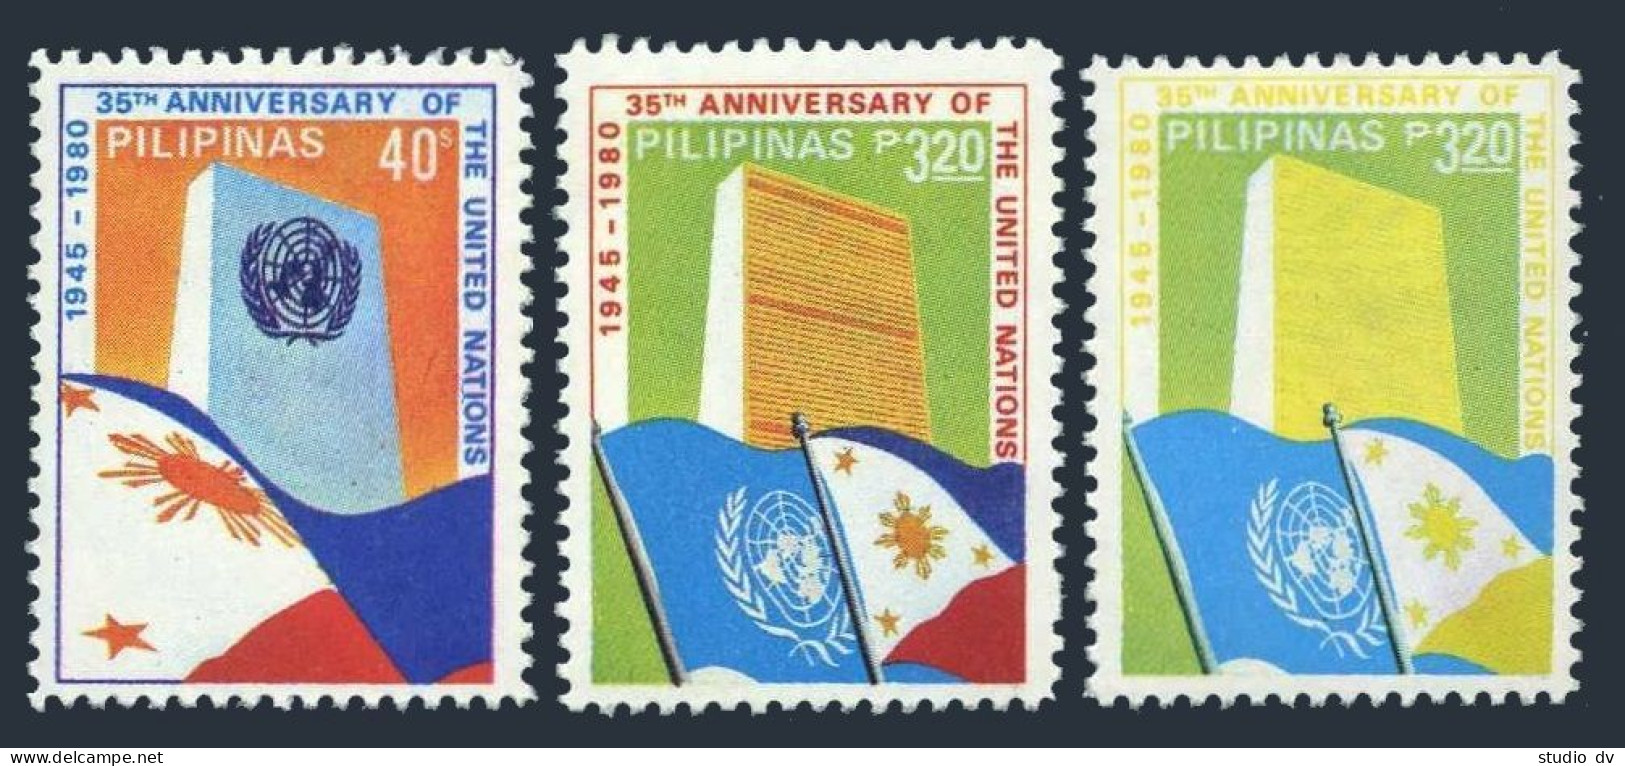 Philippines 1490 Error,1489-1490,MNH.Mi 1378-1379. UN Headquarters,Flags,1980. - Philippines